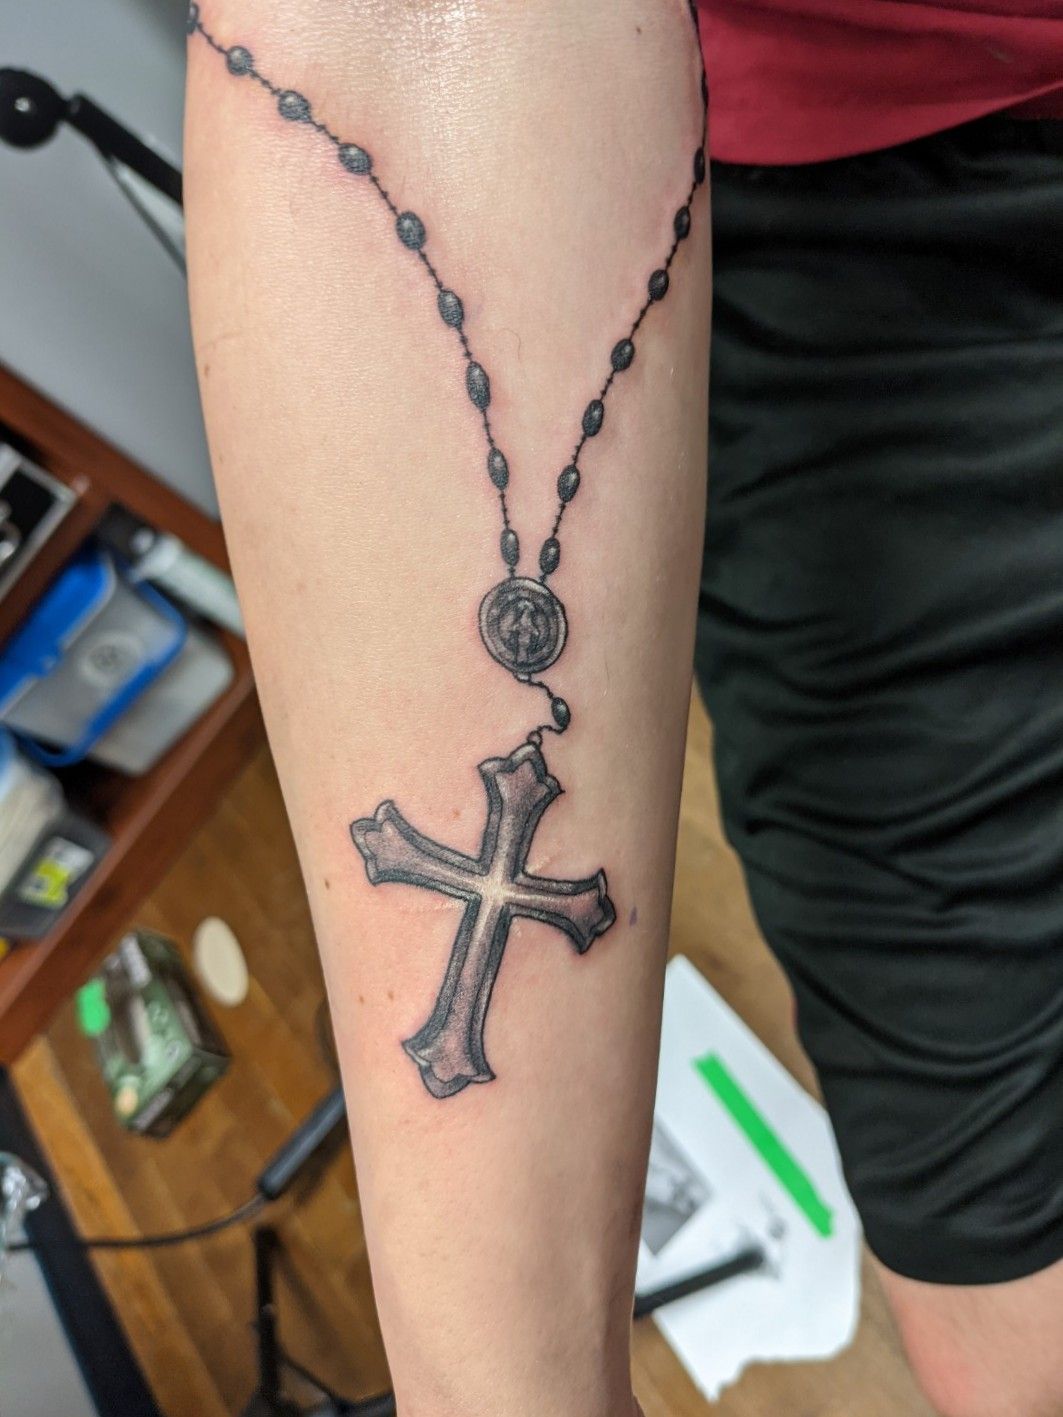 52 Great Rosary Tattoos On Arm  Tattoo Designs  TattoosBagcom